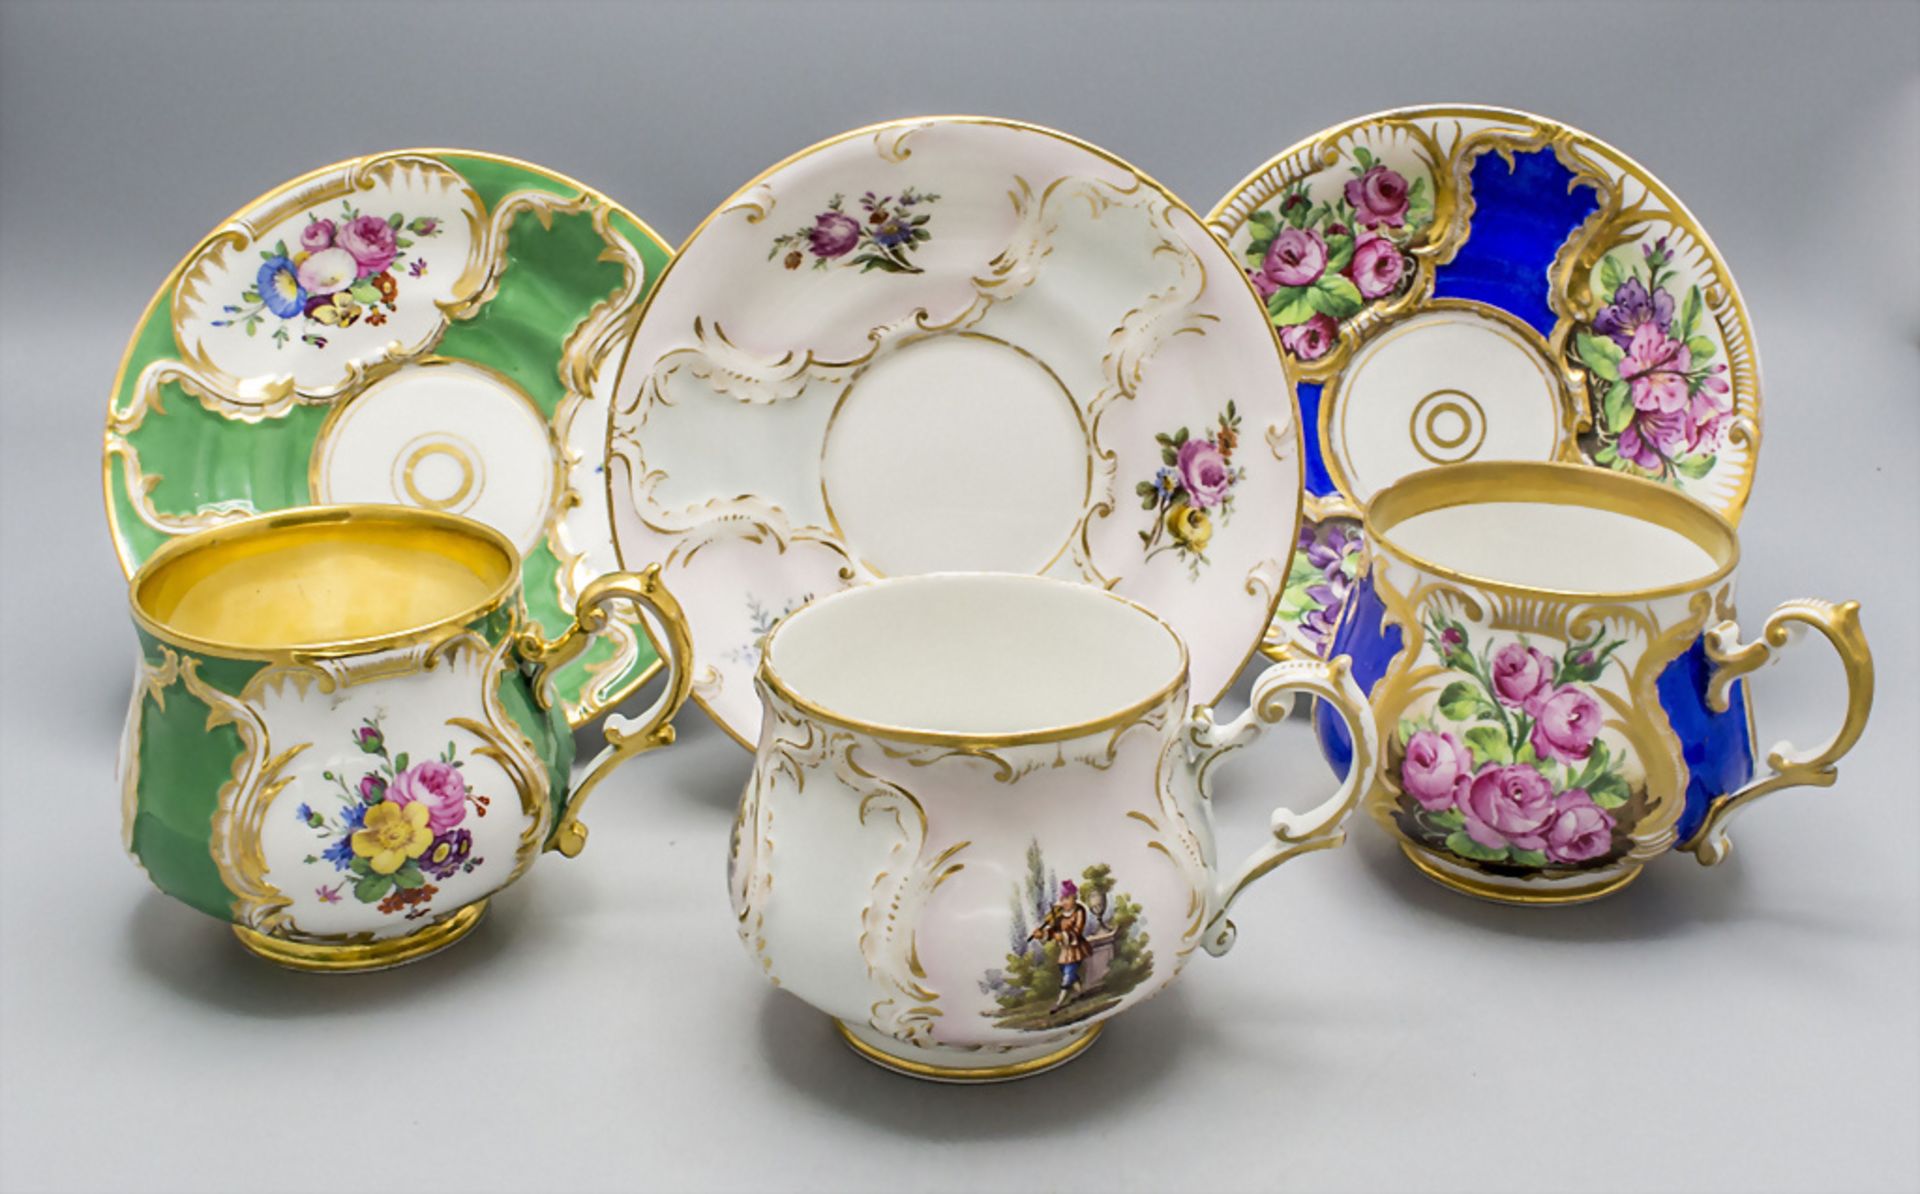 Drei Tassen mit Untertassen / Three cups with saucer, KPM Berlin, 1847-1870